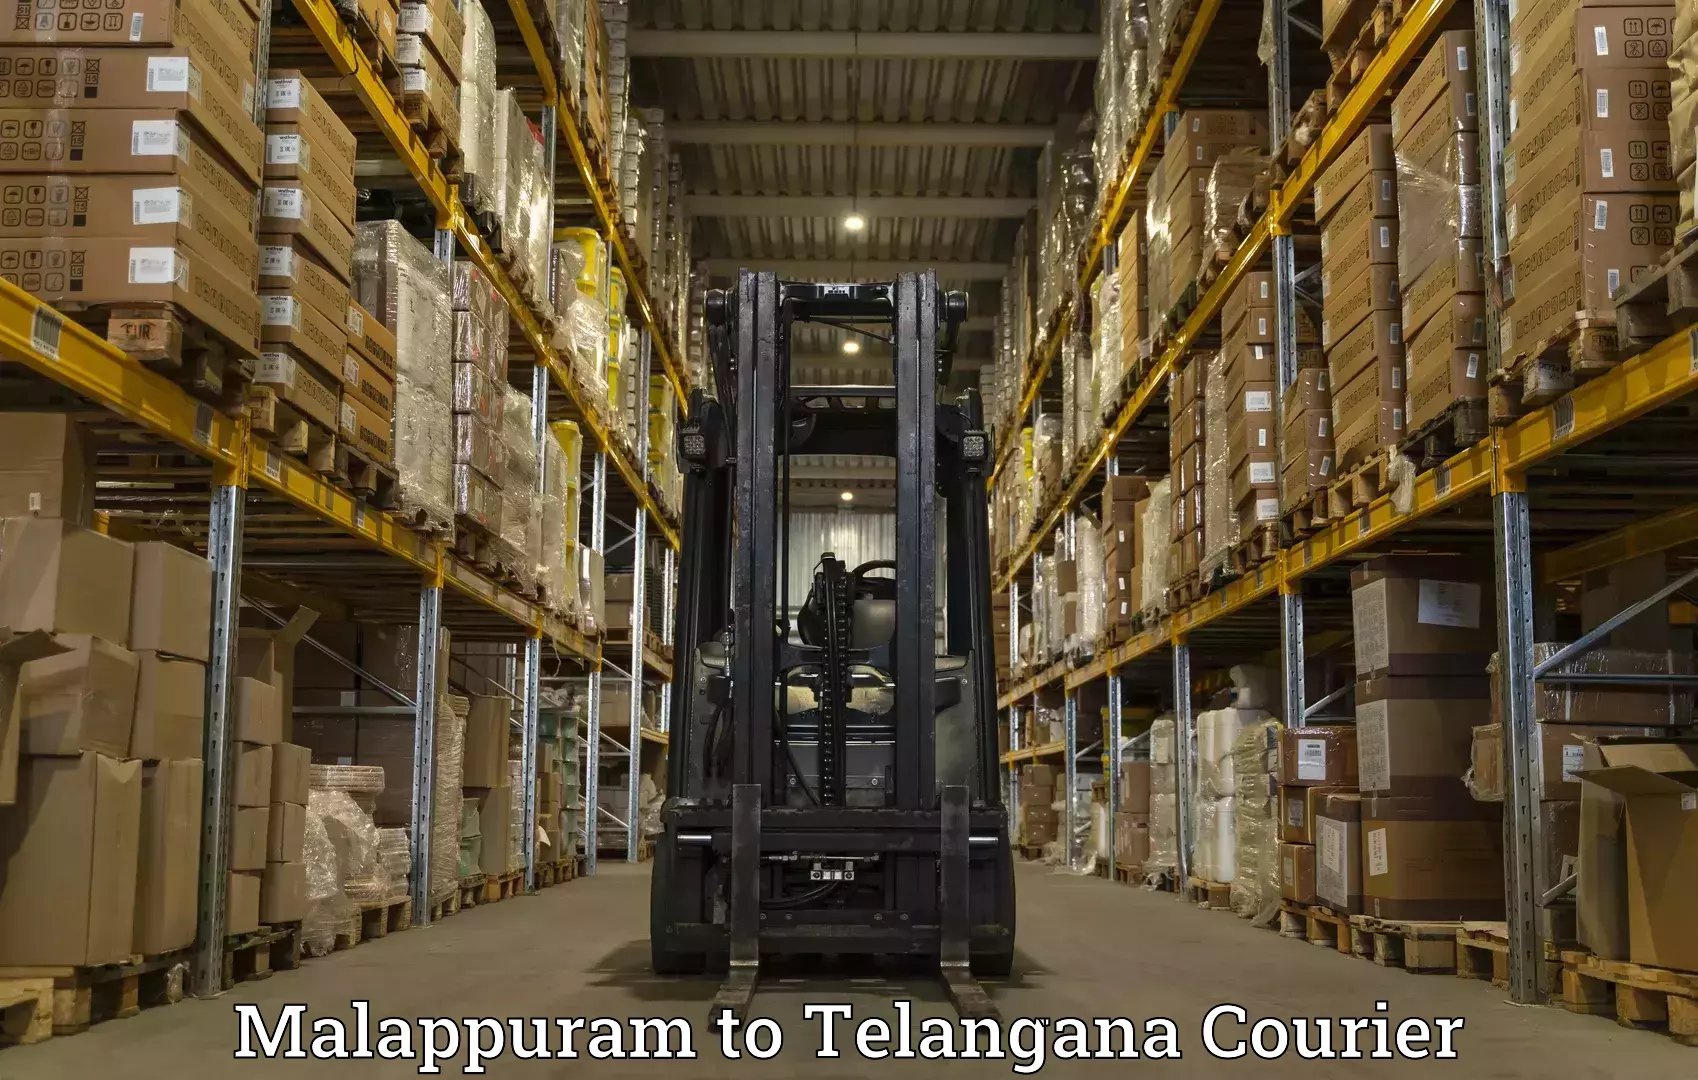 Next-generation courier services Malappuram to Chennur